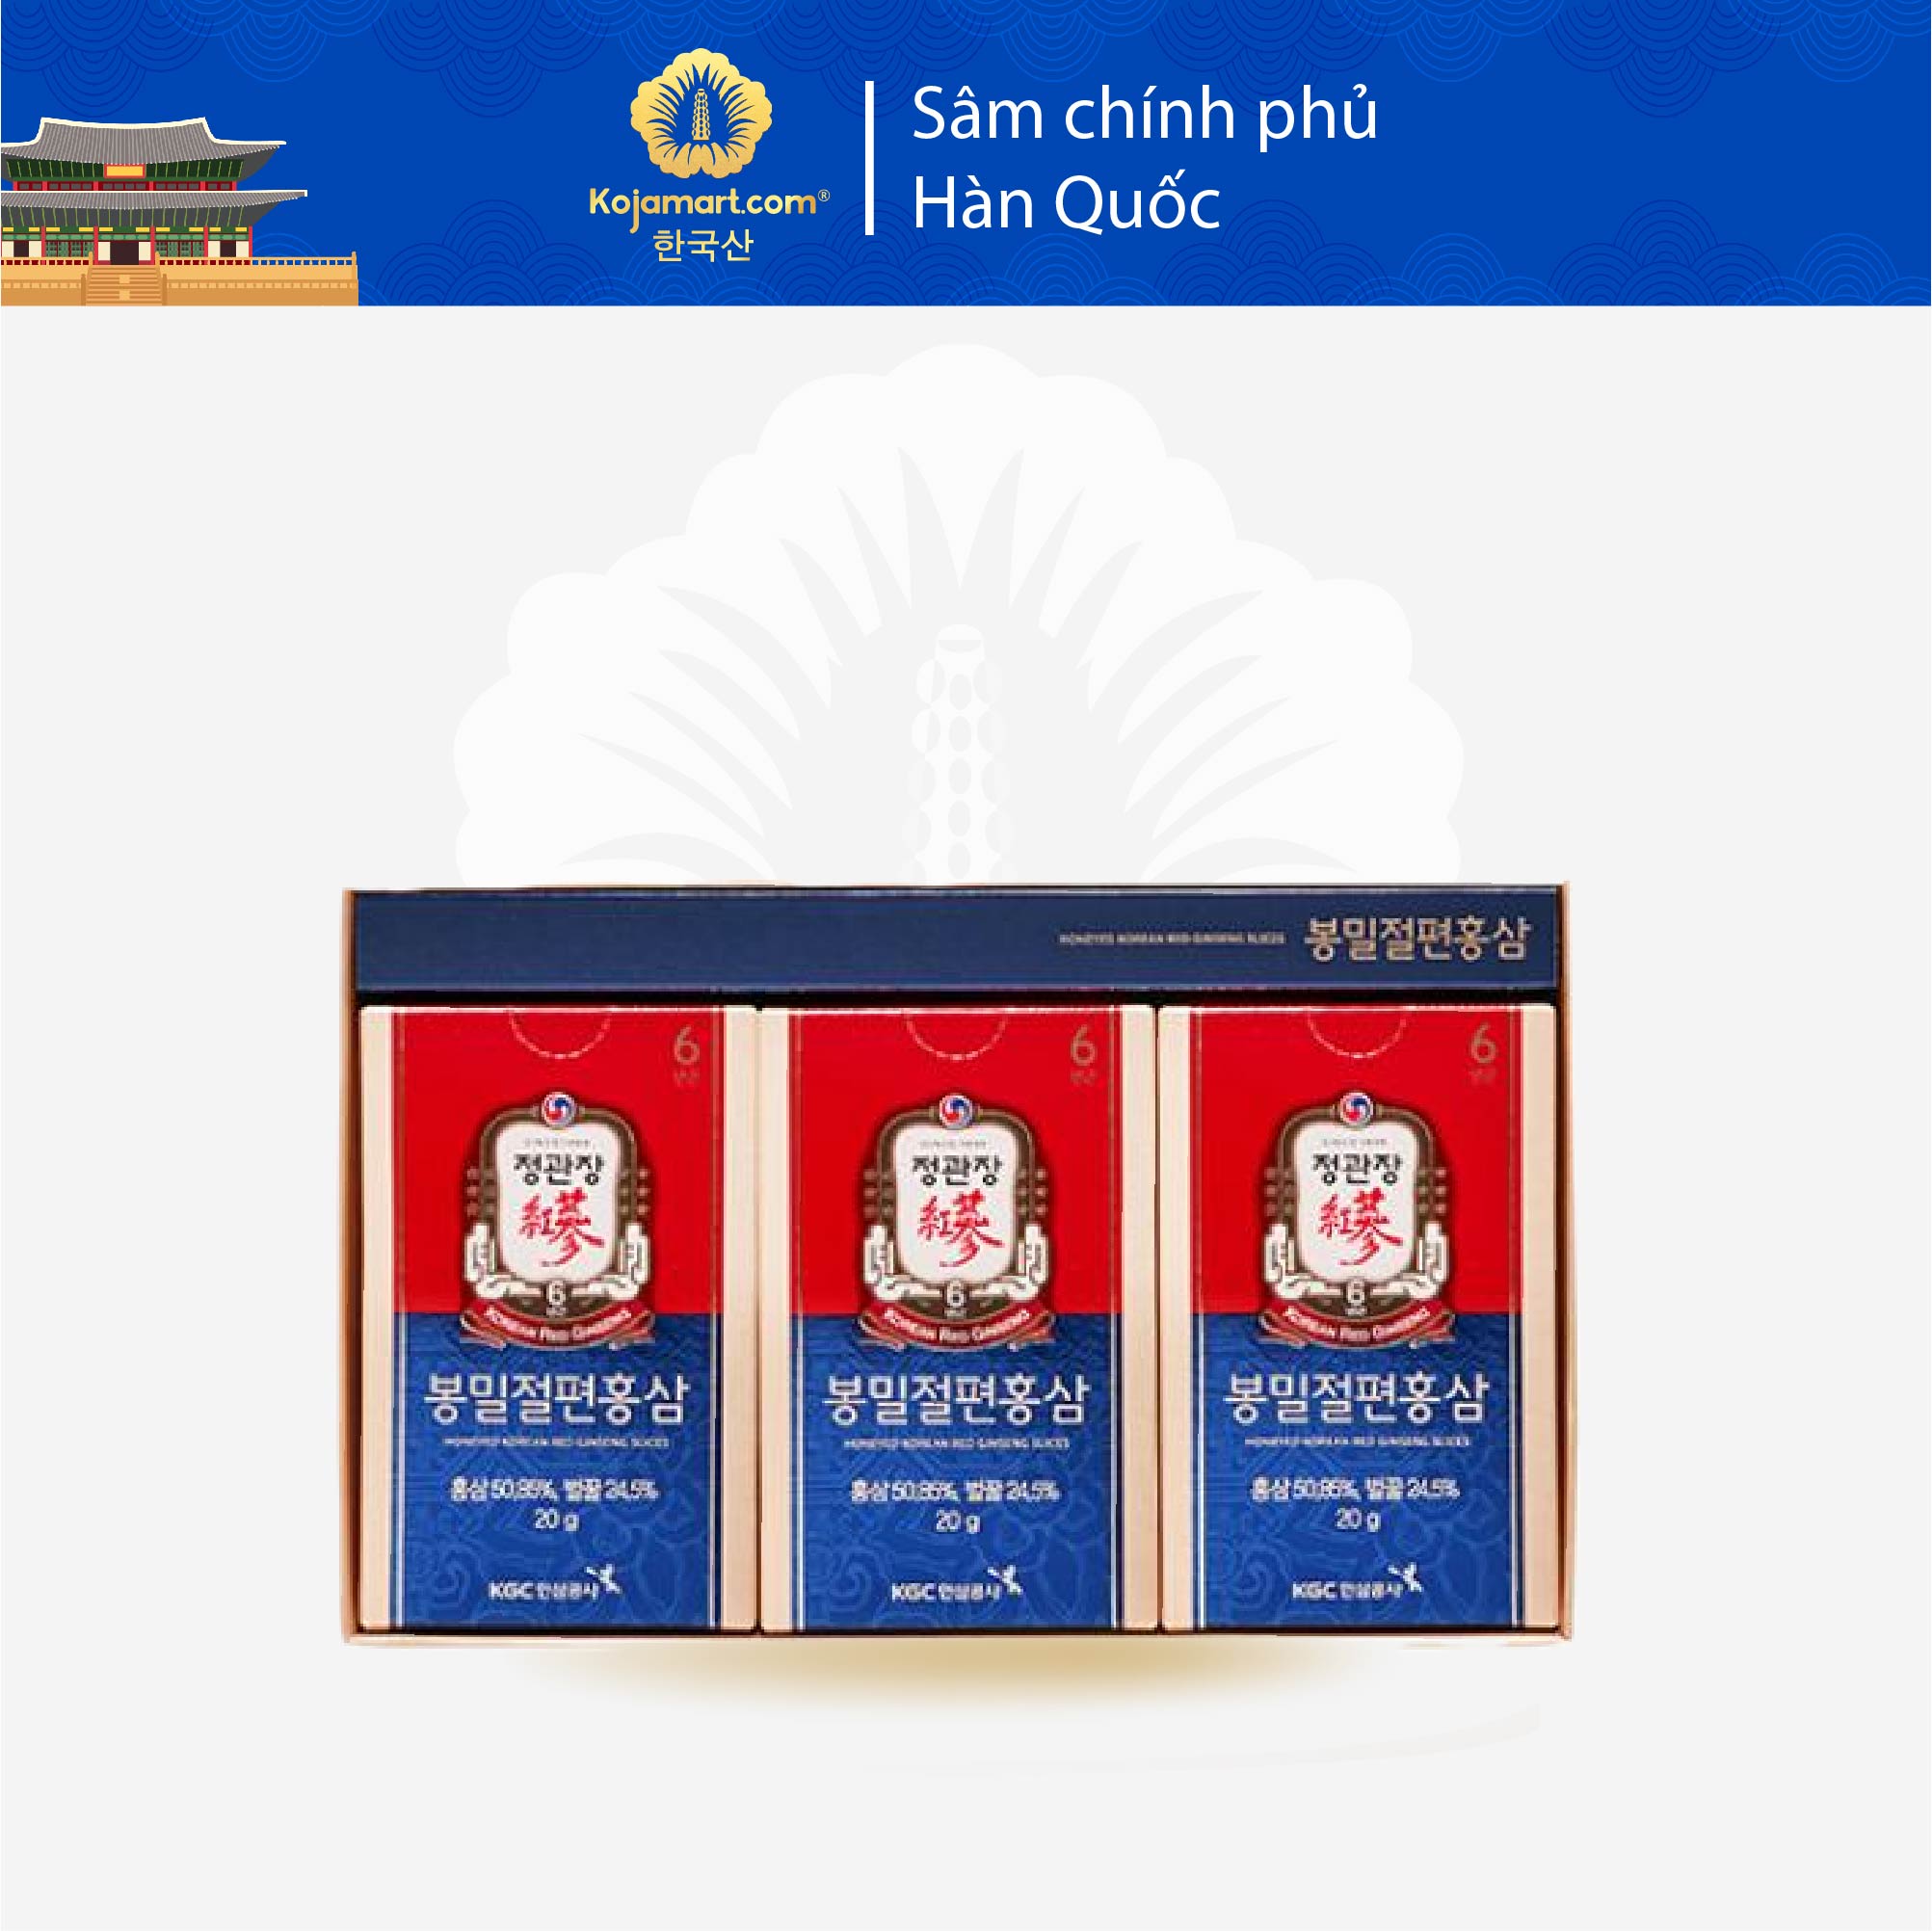 Hồng Sâm Chính Phủ Cắt Lát Tẩm Mật Ong KGC Cheong Kwan Jang Hộp 12 gói x 20g